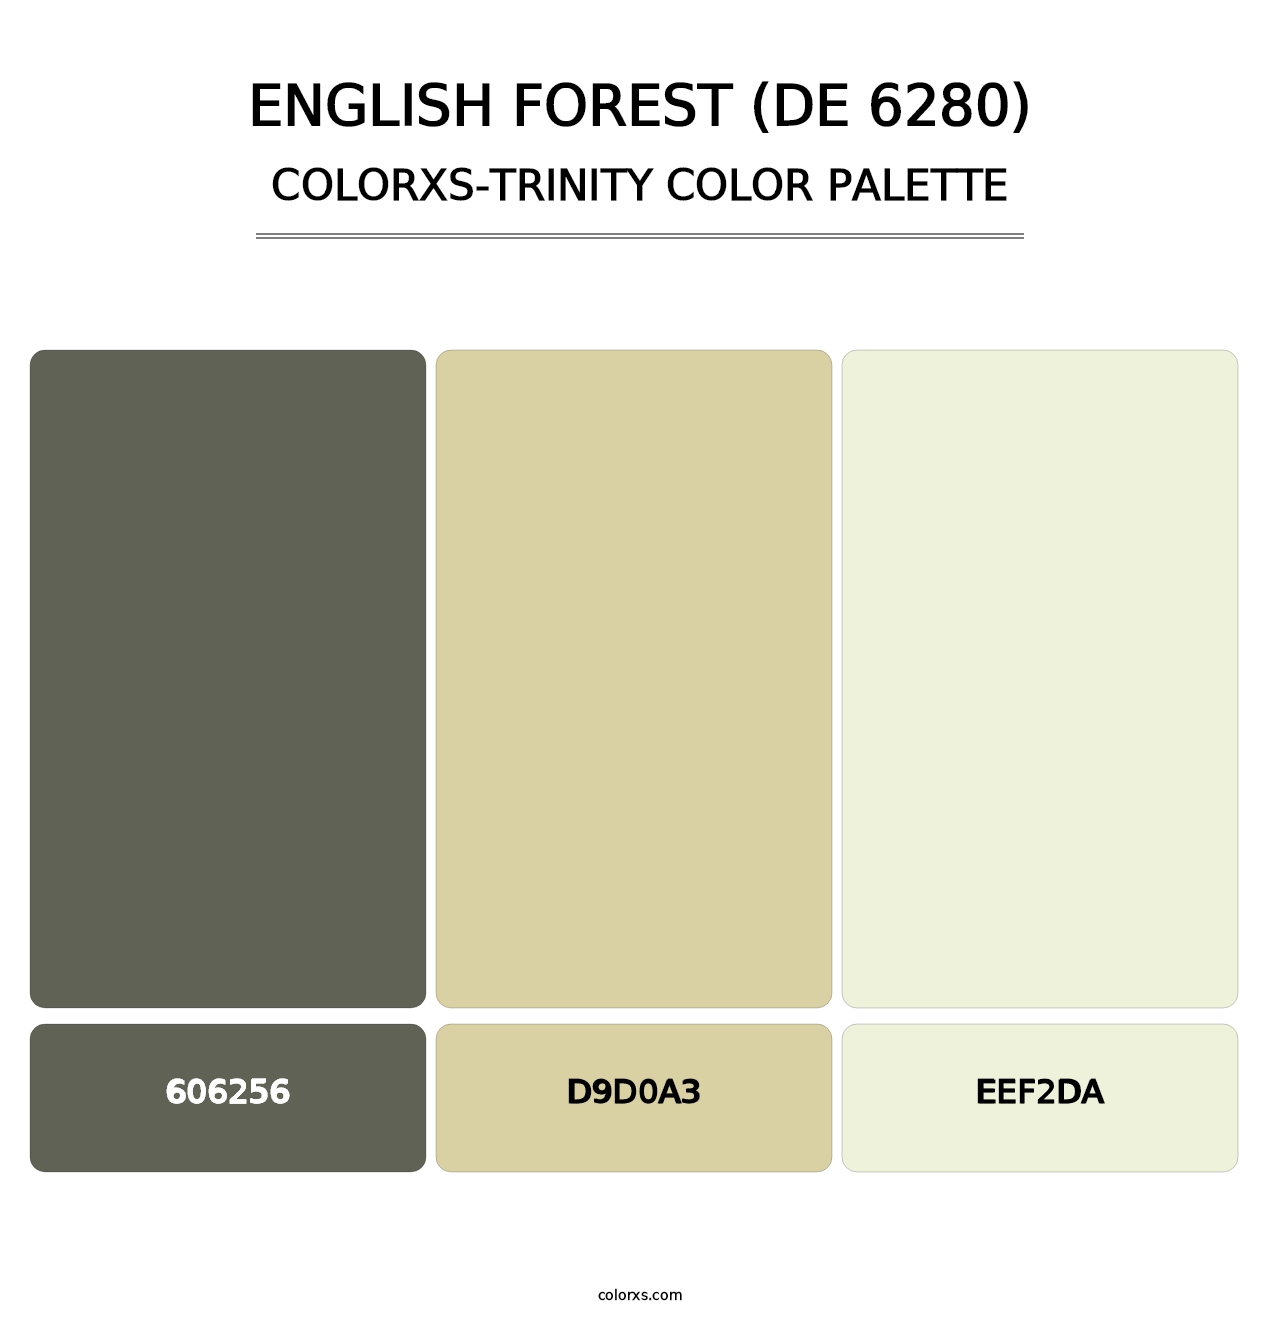 English Forest (DE 6280) - Colorxs Trinity Palette